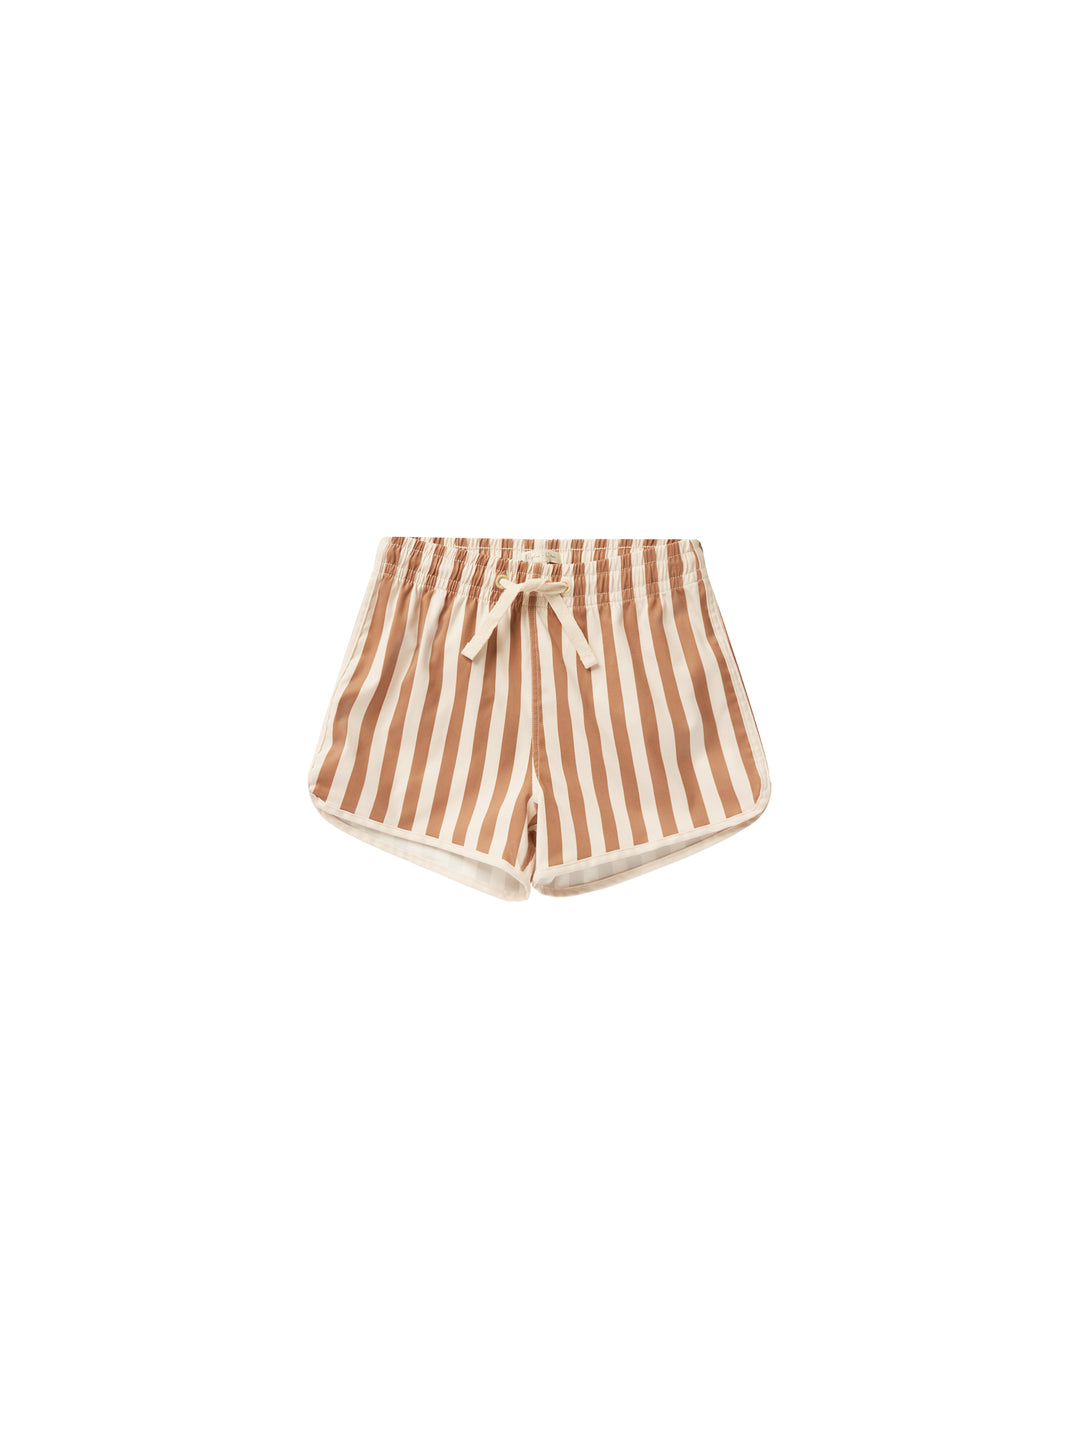 Swim Trunk- Clay Stripe